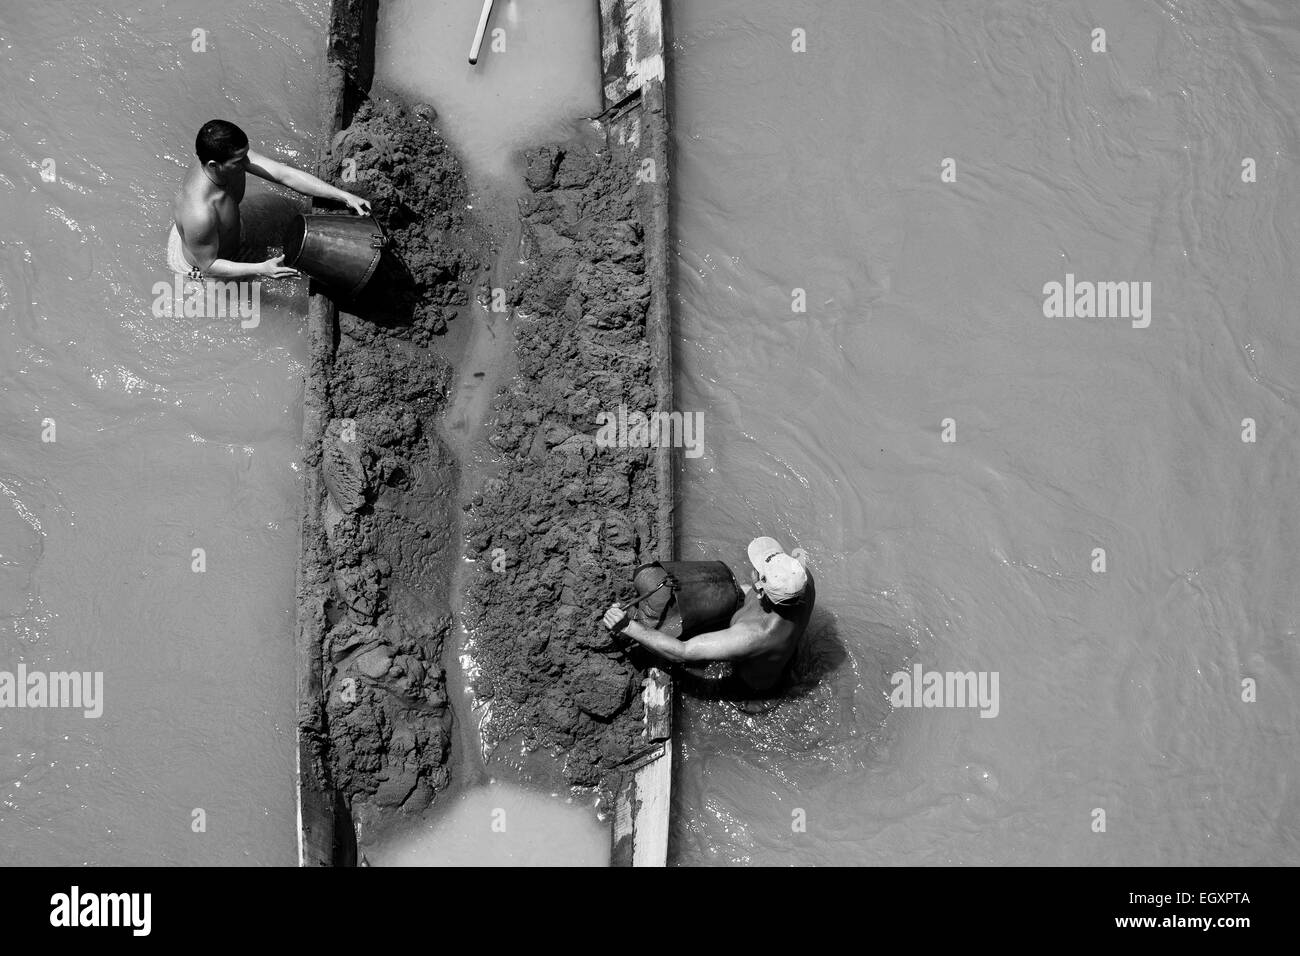 Les mineurs de sable colombien décharger seaux plein de sable dans leur bateau ancré au milieu de la rivière à Cartago, Colombie. Banque D'Images